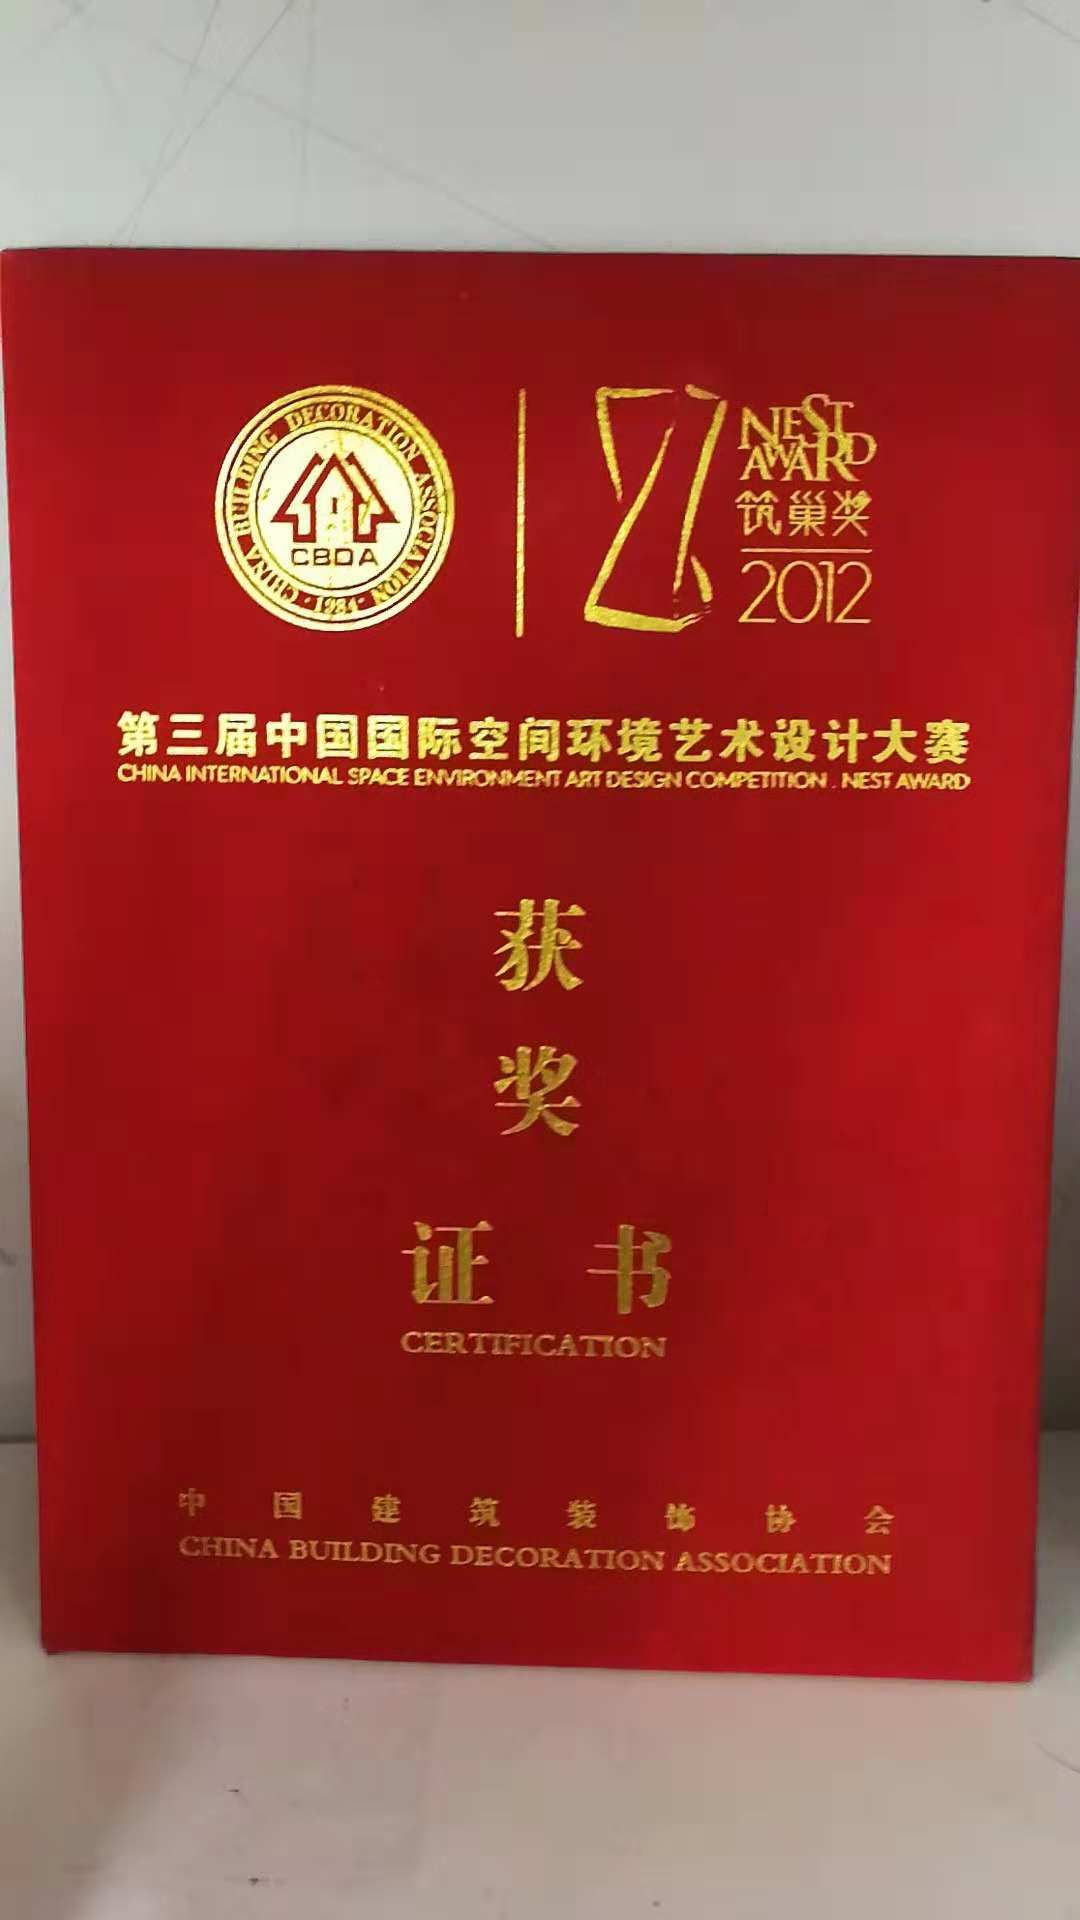 中国建筑装饰行业协会 第三届筑巢奖 获奖公司